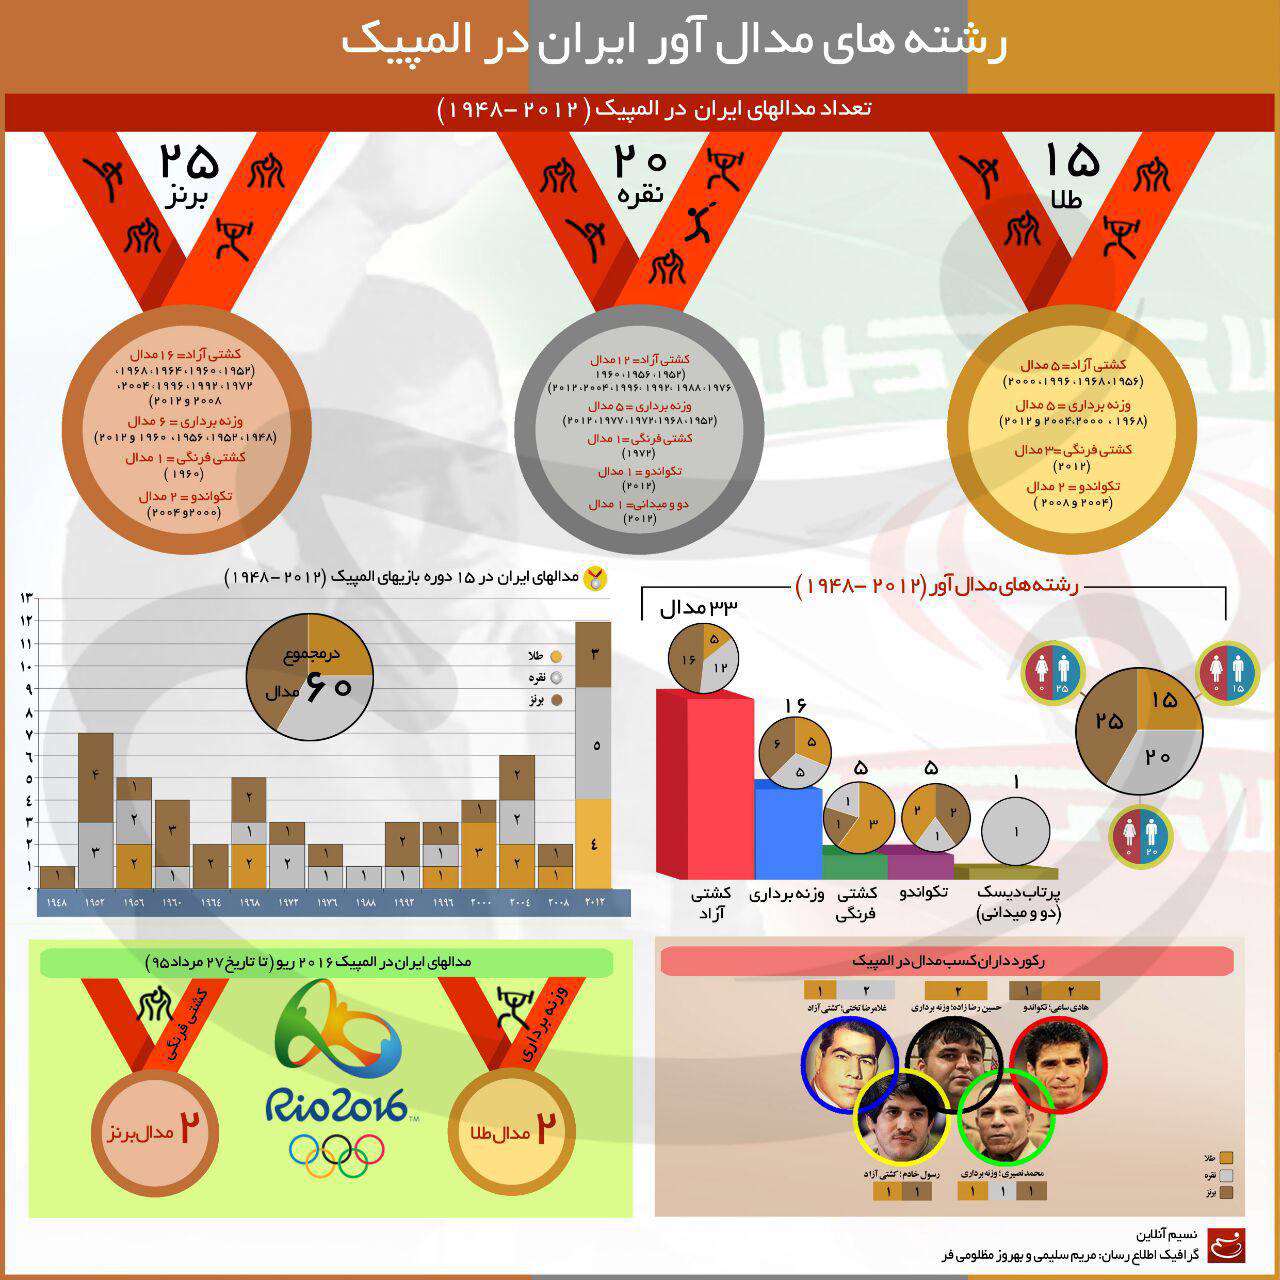 اینفوگرافیک رشته های مدال آور ایران در المپیک